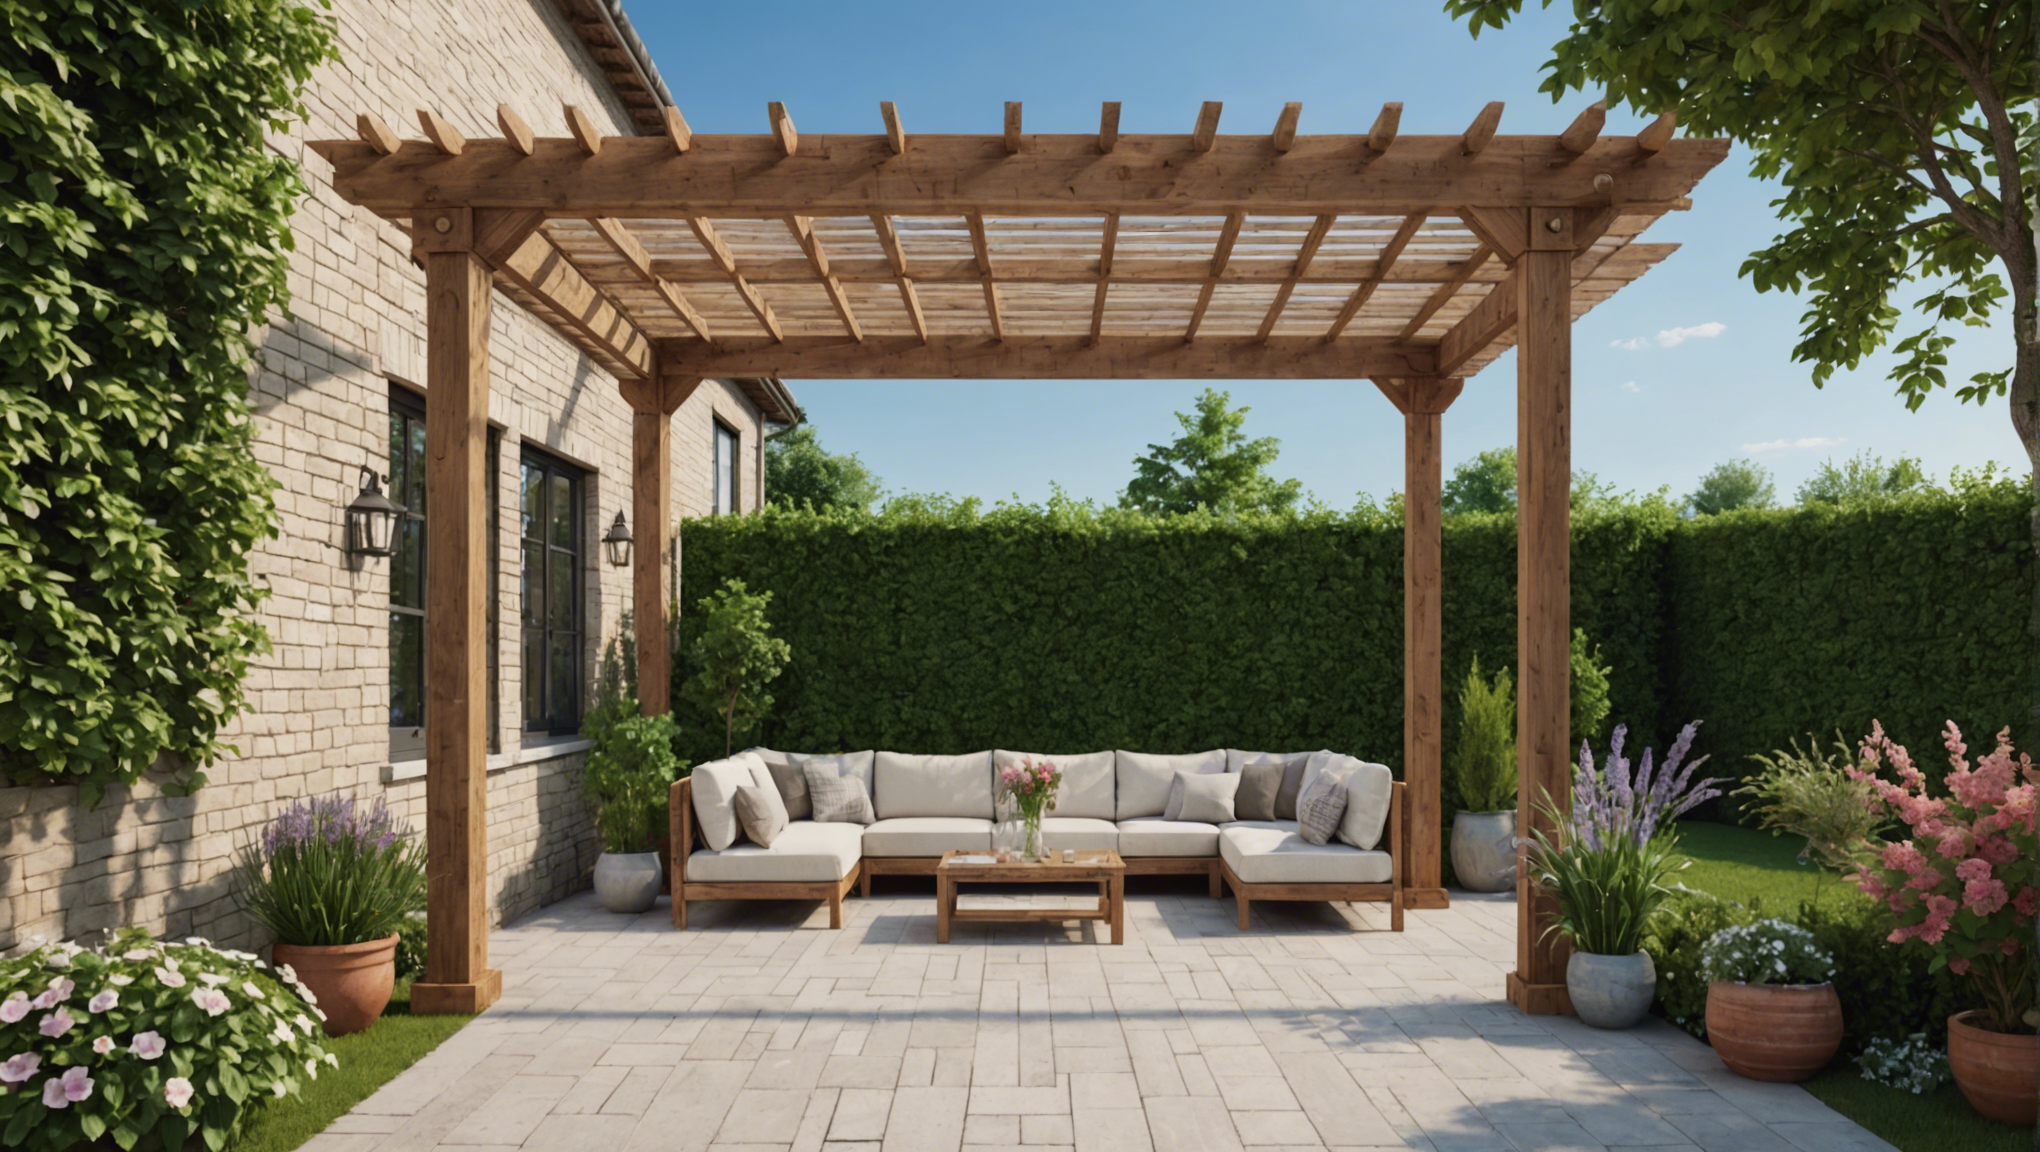 découvrez les avantages d'opter pour une pergola en bois dans votre jardin. esthétique, durable et écologique, la pergola en bois apporte charme et confort à votre espace extérieur.